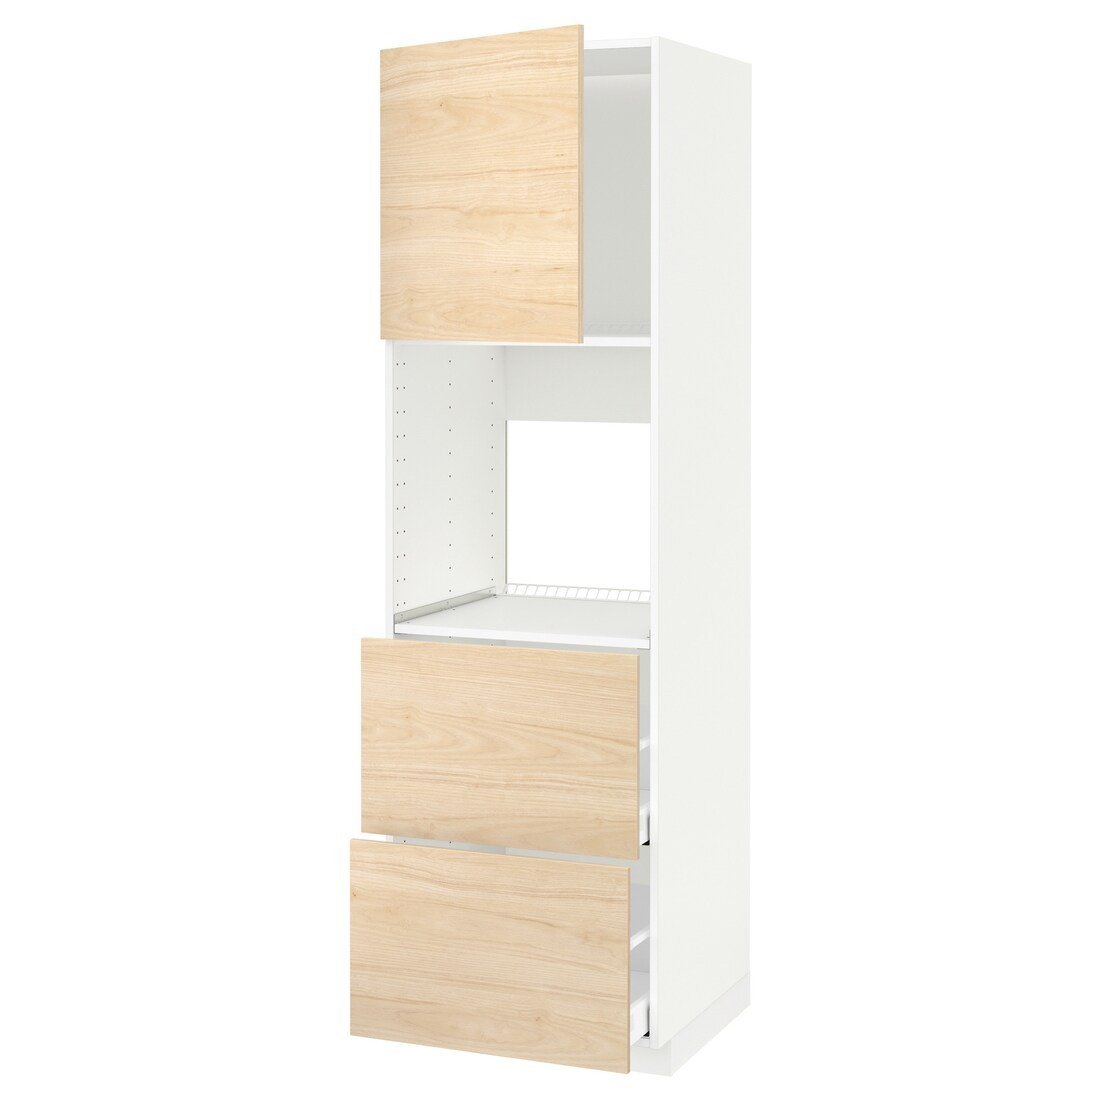 METOD МЕТОД / MAXIMERA МАКСИМЕРА Высокий шкаф для духовки с дверцей / ящиками, белый / Askersund узор светлый ясень, 60x60x200 см